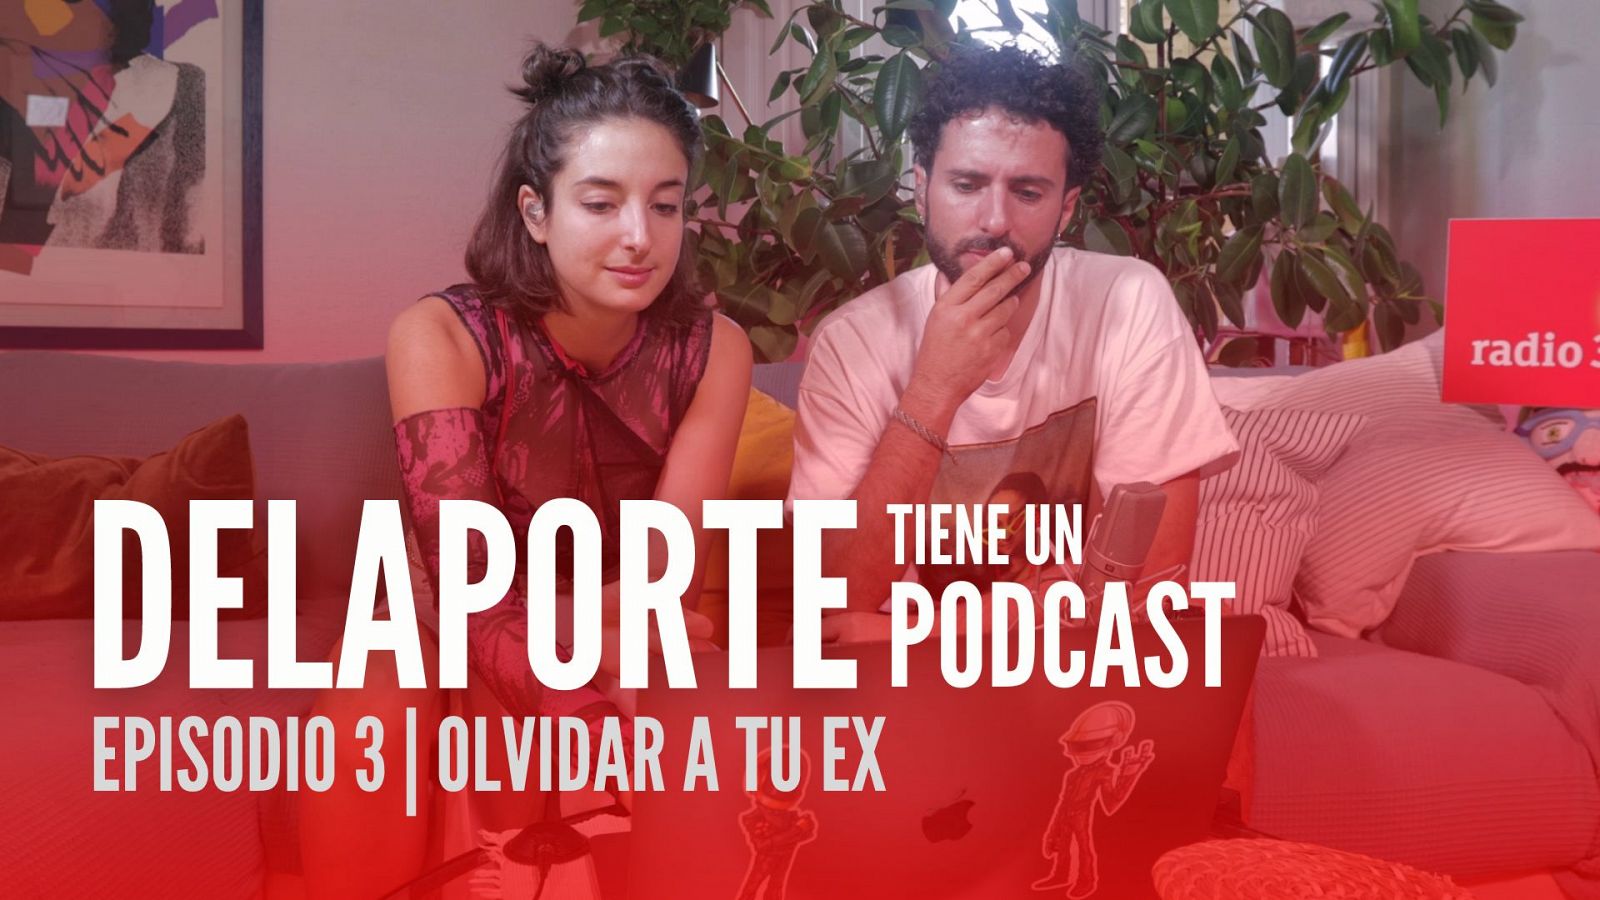 Delaporte tiene un podcast - olvidar a tu ex - 29/09/2022 - Ver ahora